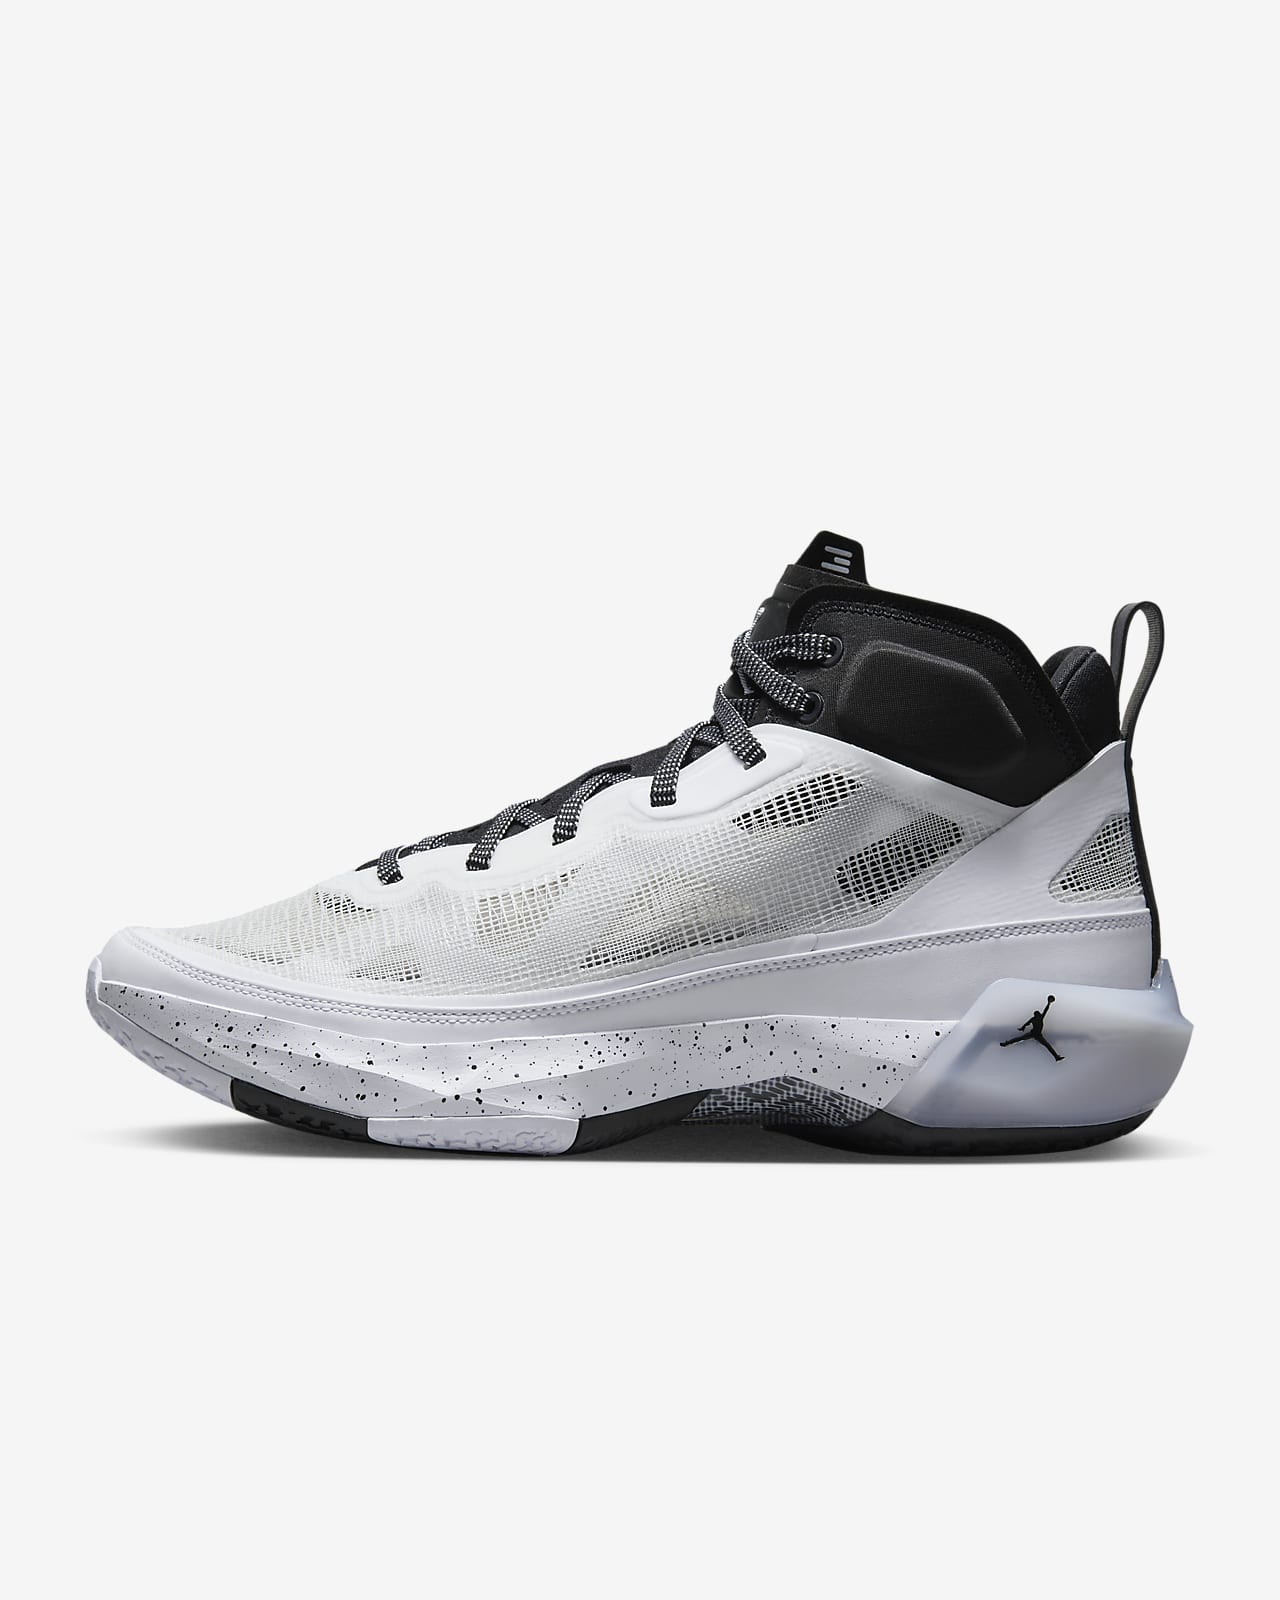 Calzado de básquetbol Air Jordan Nike MX